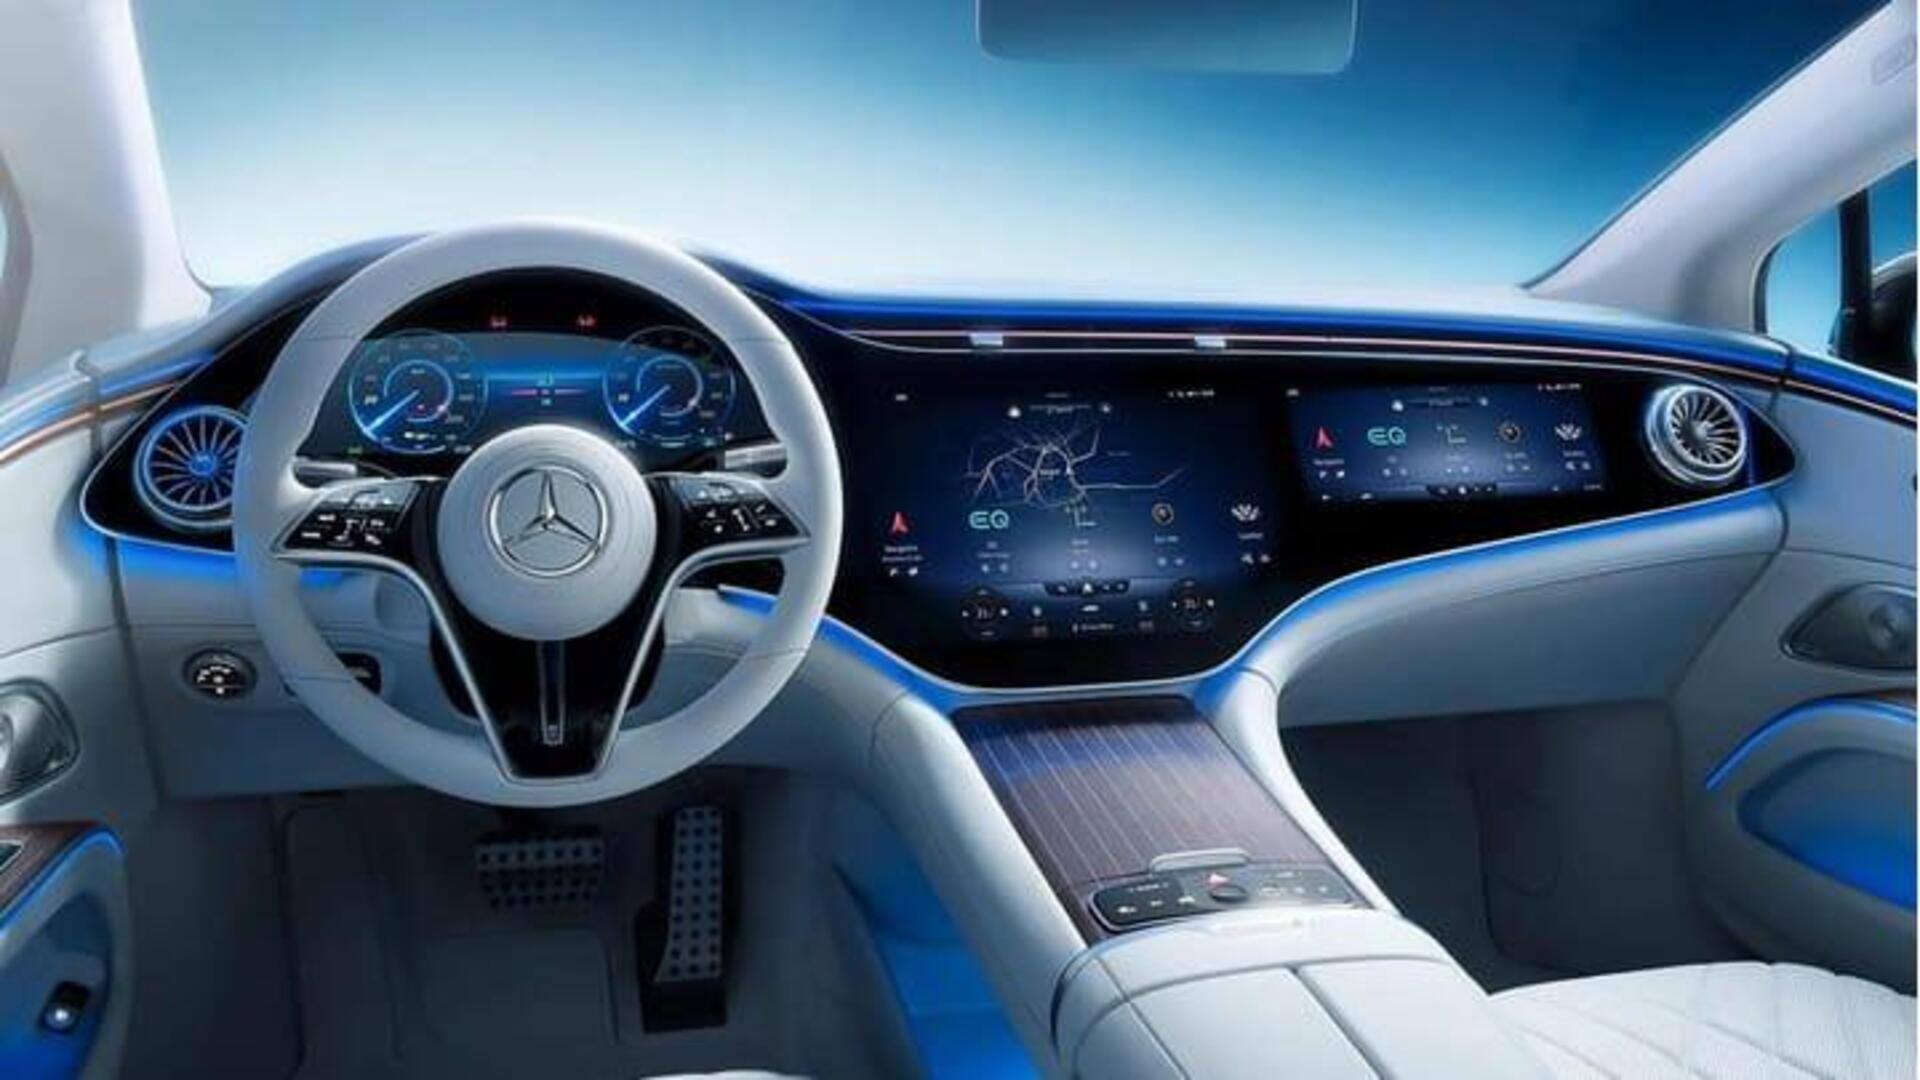 Kendalikan perangkat pintar Anda dari mobil Mercedes-Benz Anda: Begini caranya